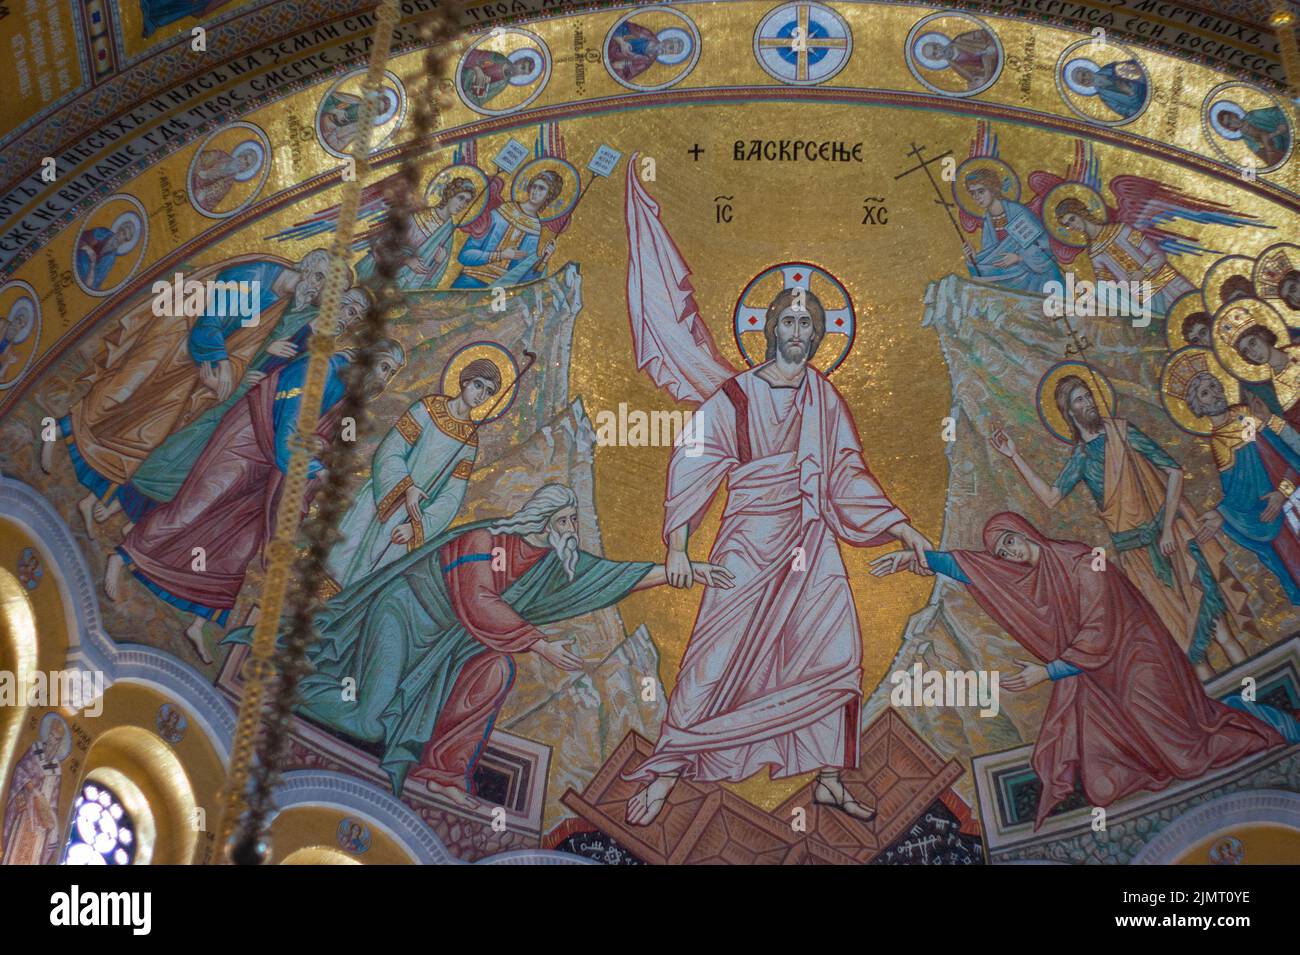 Eglise chrétienne orthodoxe Saint-Sava,Belgrade,Serbie a tous les murs intérieurs faits de morceaux de verre sous forme de mosaïque, pas de tuile. Jésus-Christ est la pièce maîtresse. Banque D'Images